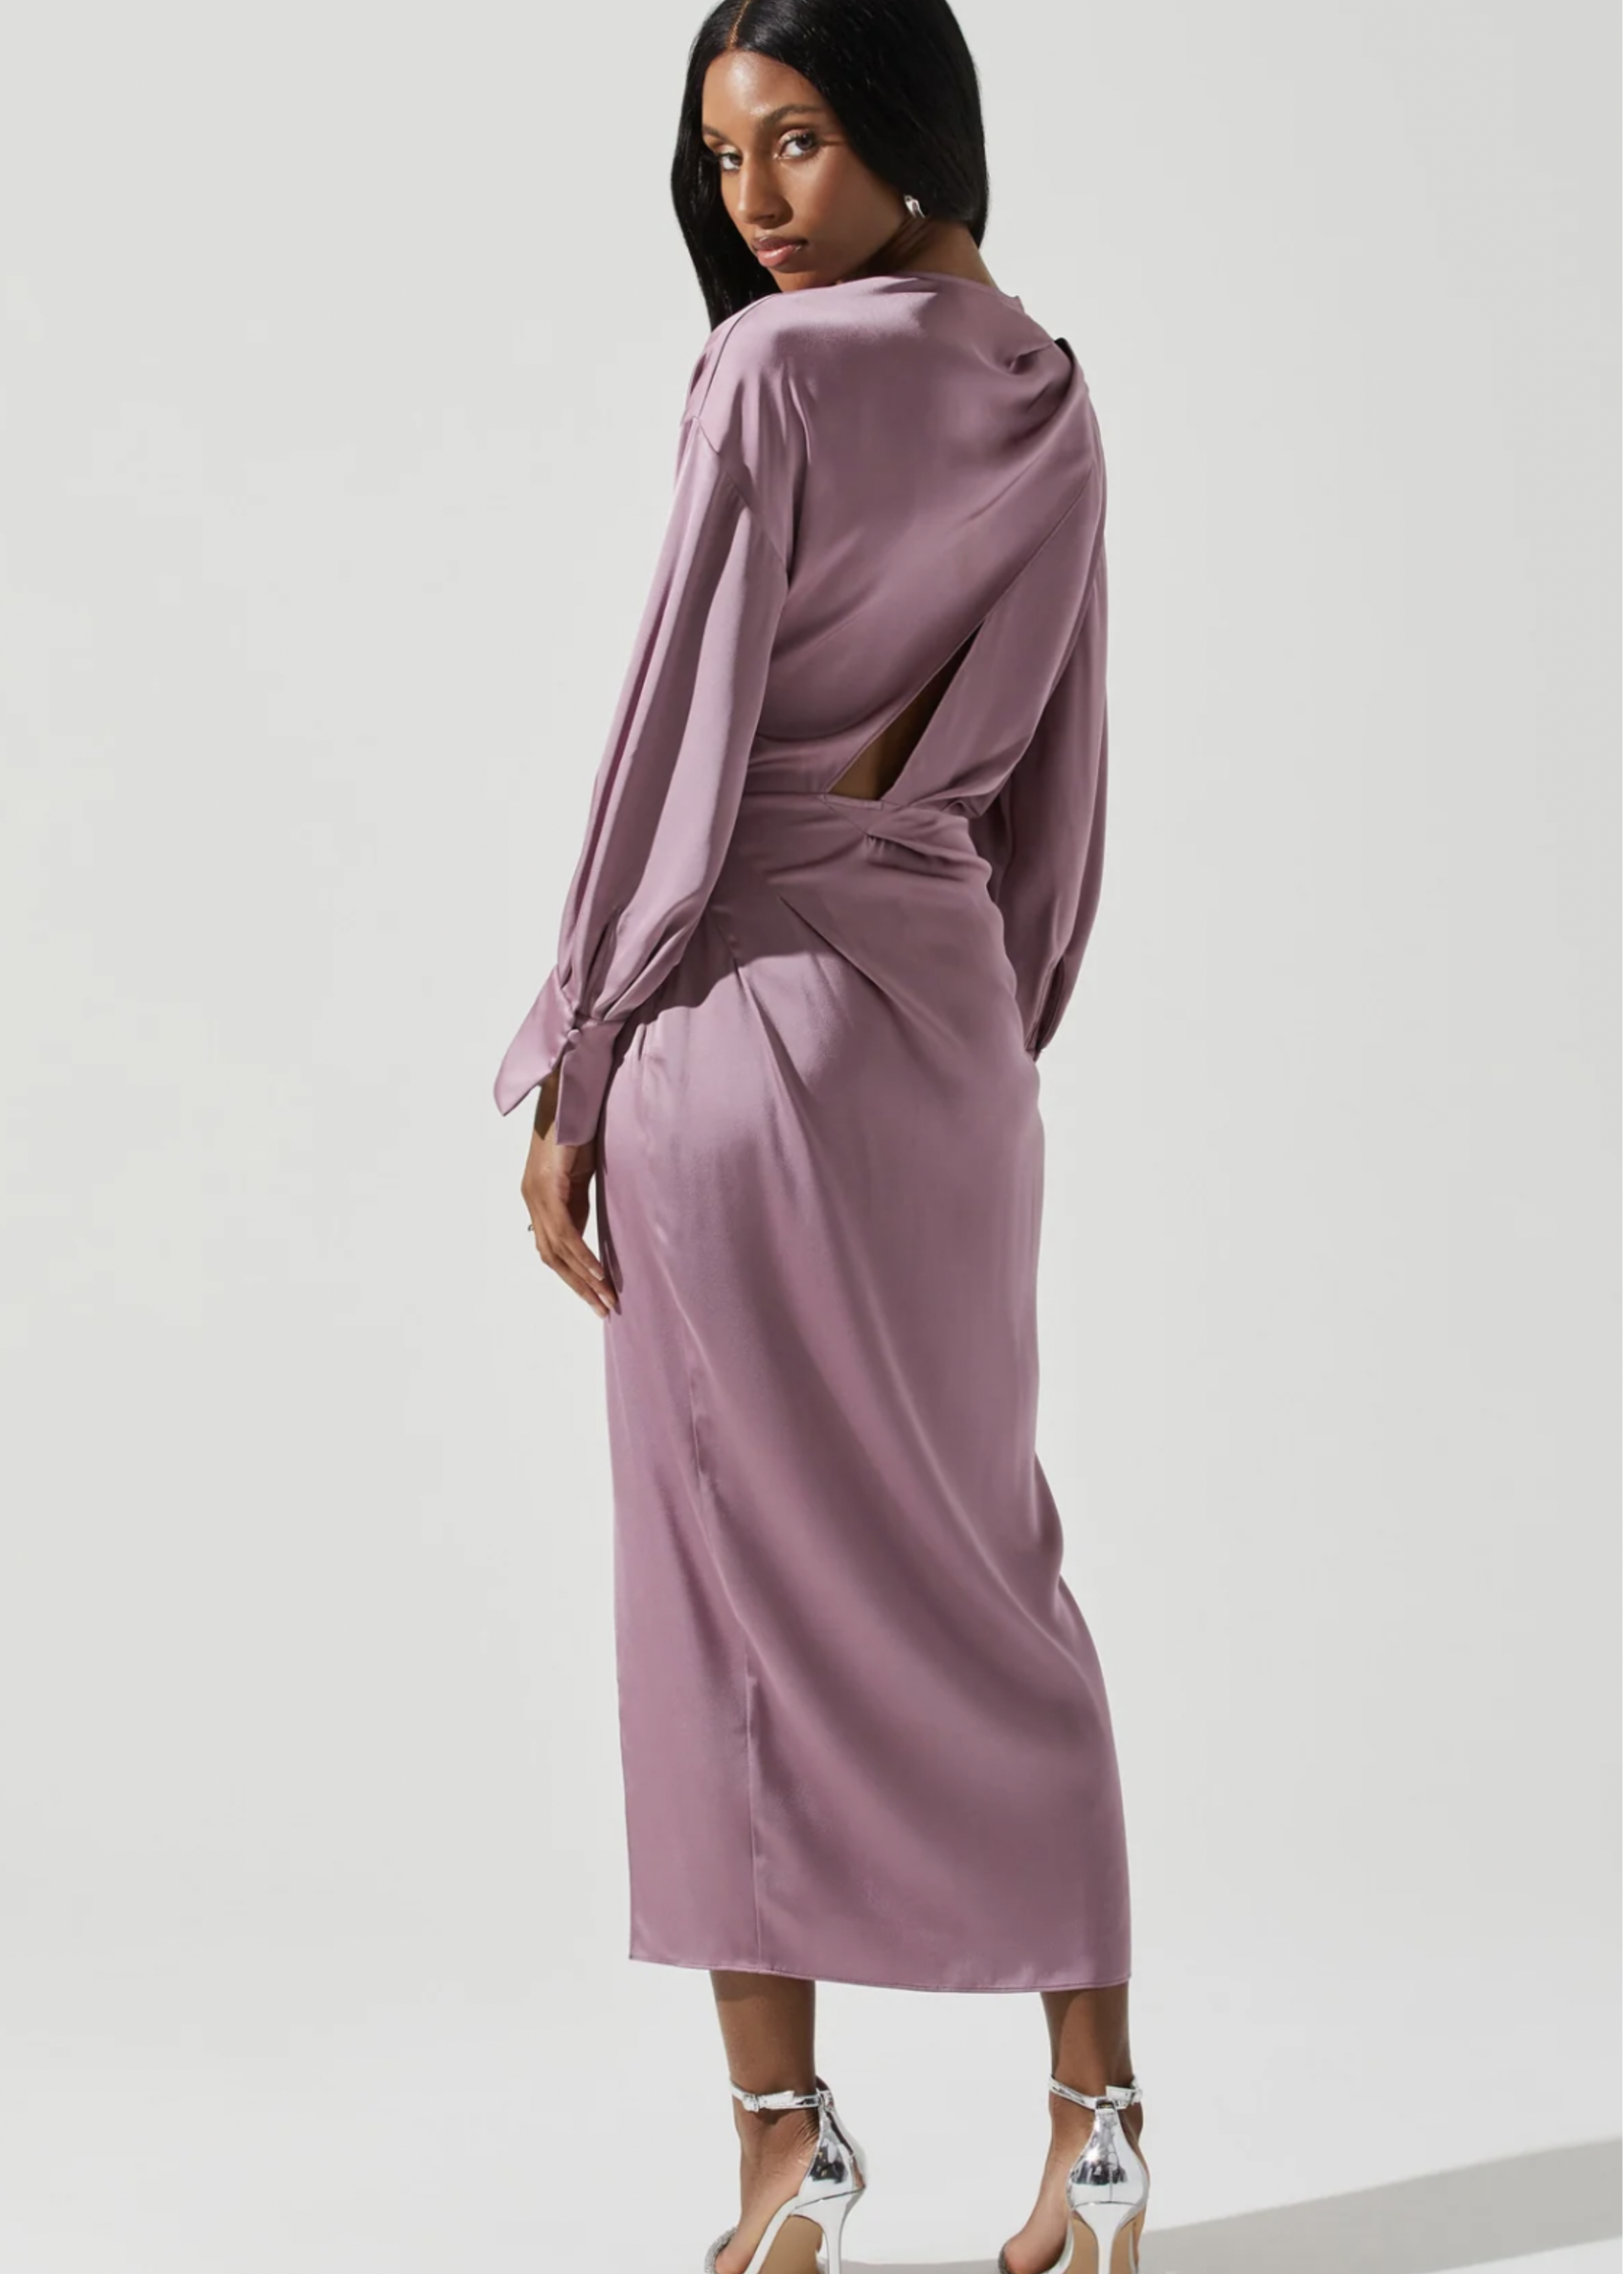 Elitaire Boutique Sadyra Dress in Mauve